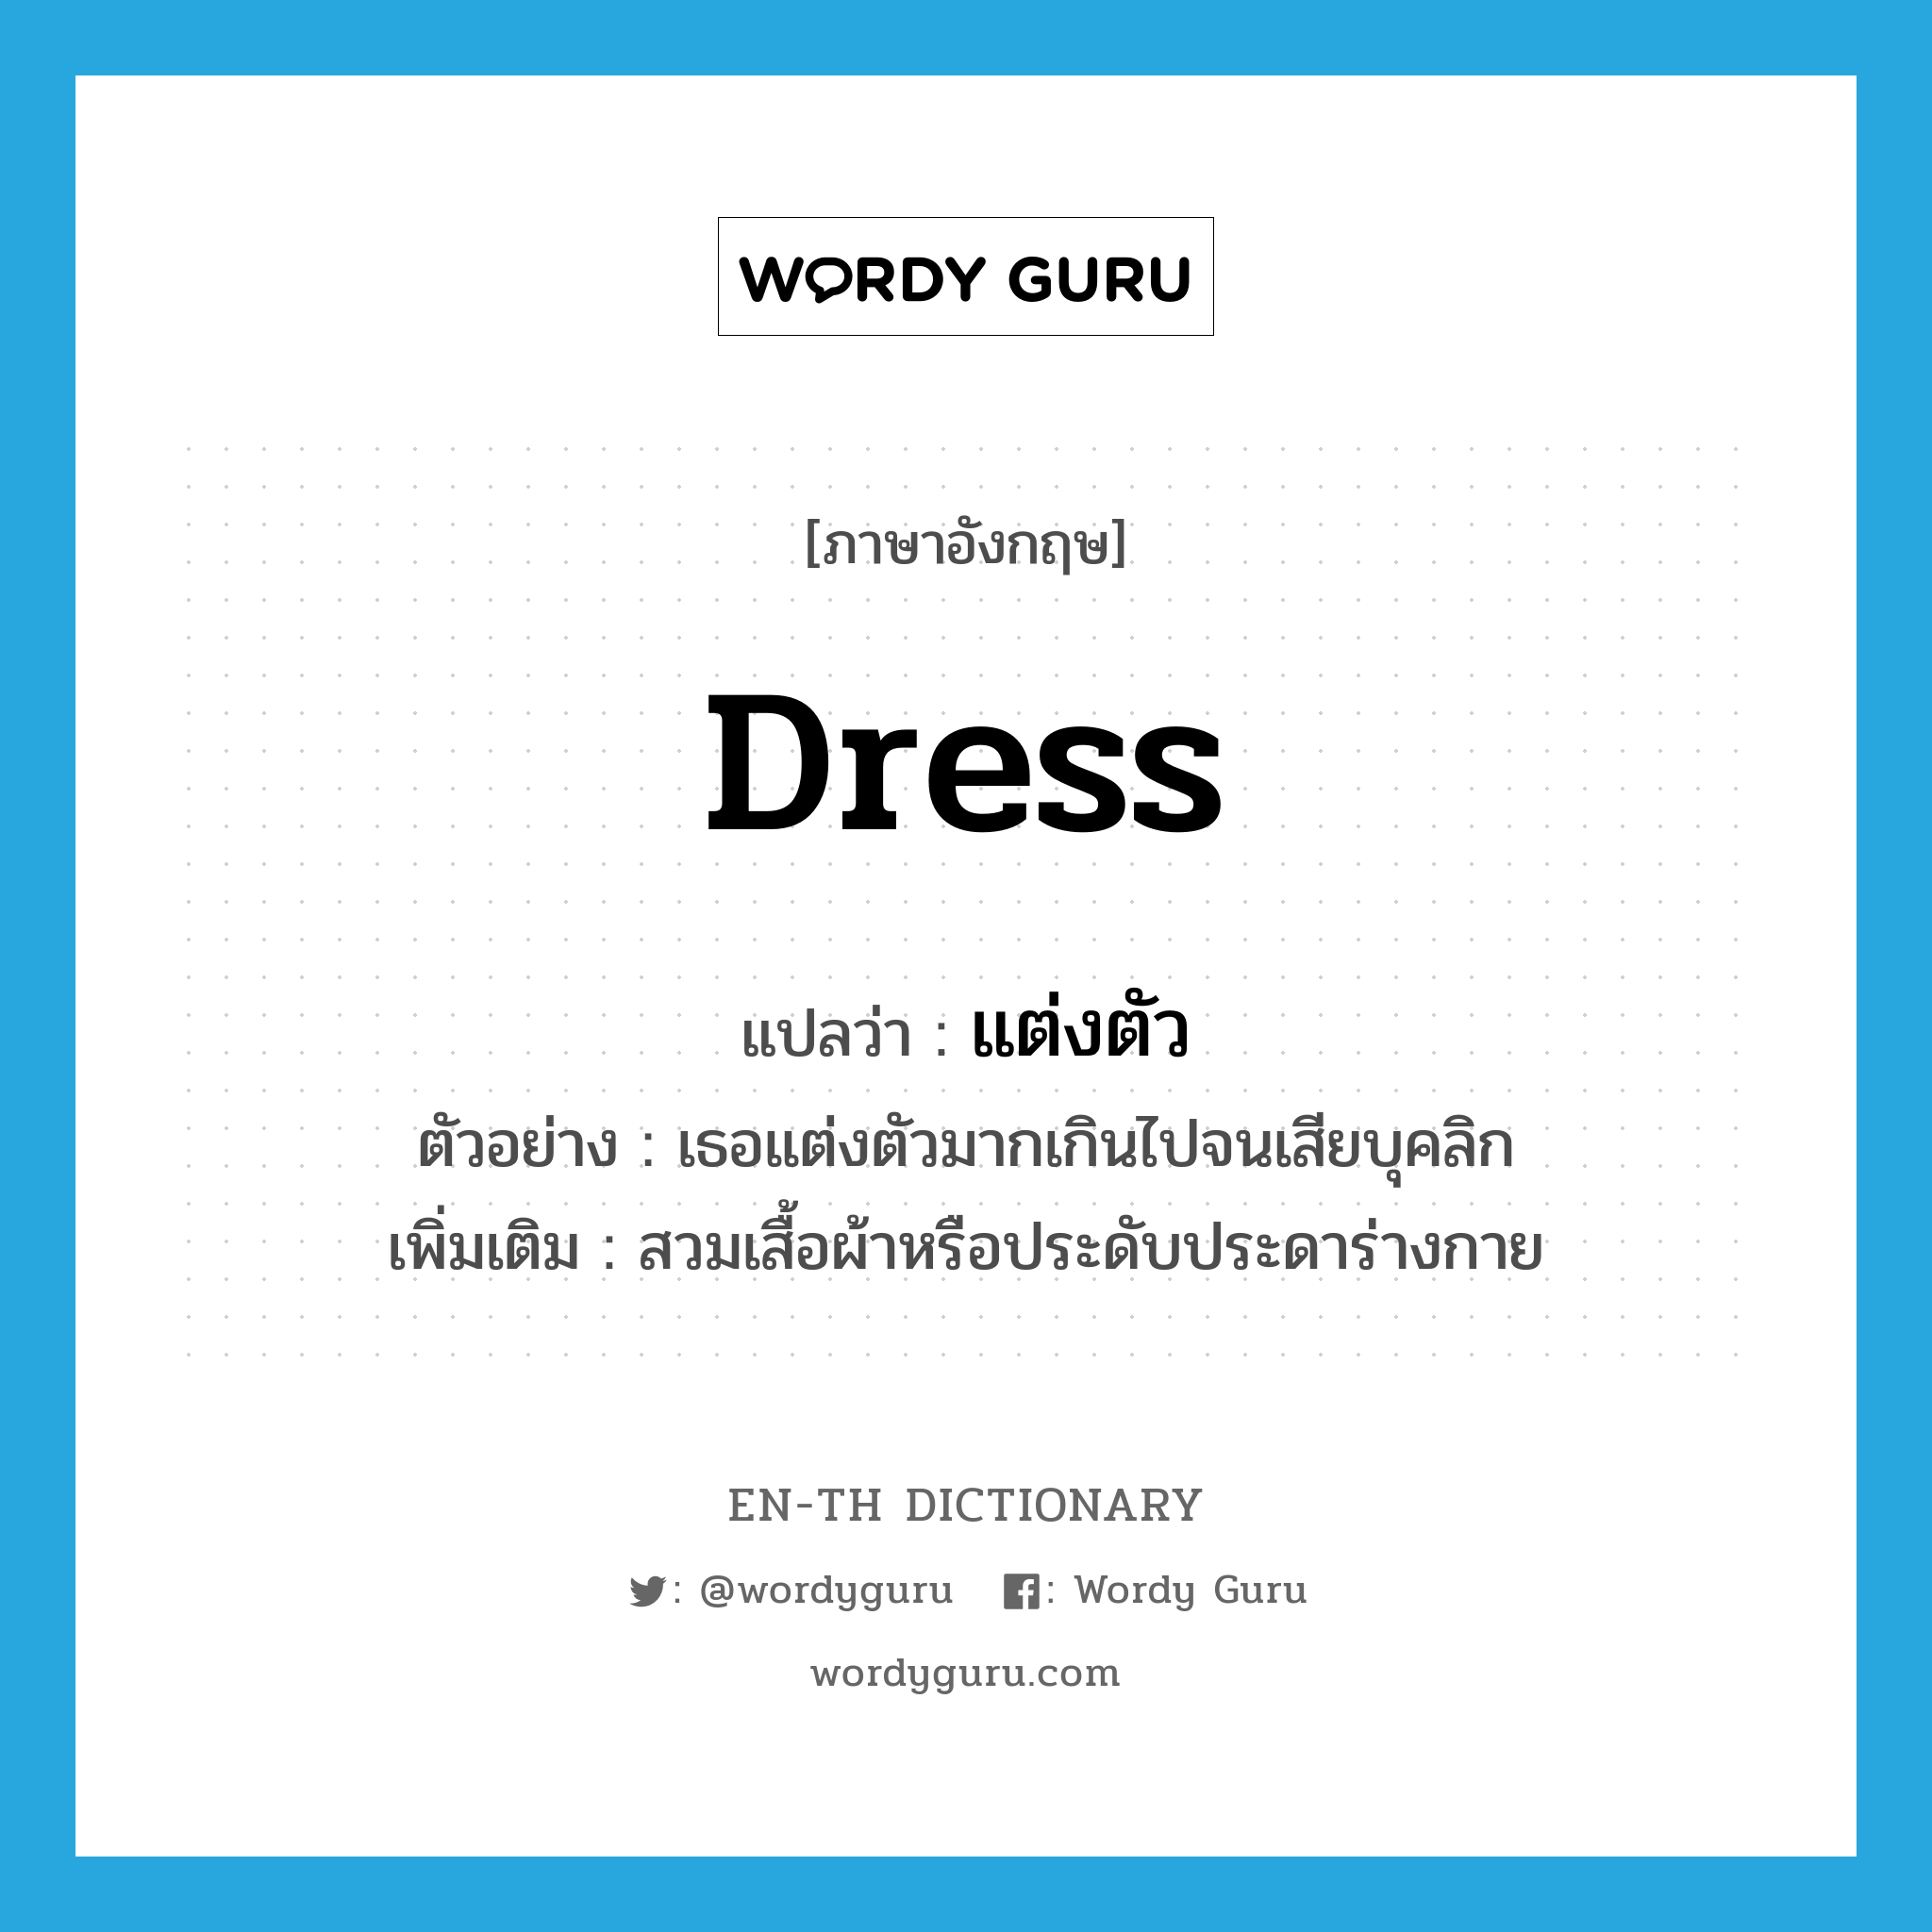 dress แปลว่า?, คำศัพท์ภาษาอังกฤษ dress แปลว่า แต่งตัว ประเภท V ตัวอย่าง เธอแต่งตัวมากเกินไปจนเสียบุคลิก เพิ่มเติม สวมเสื้อผ้าหรือประดับประดาร่างกาย หมวด V